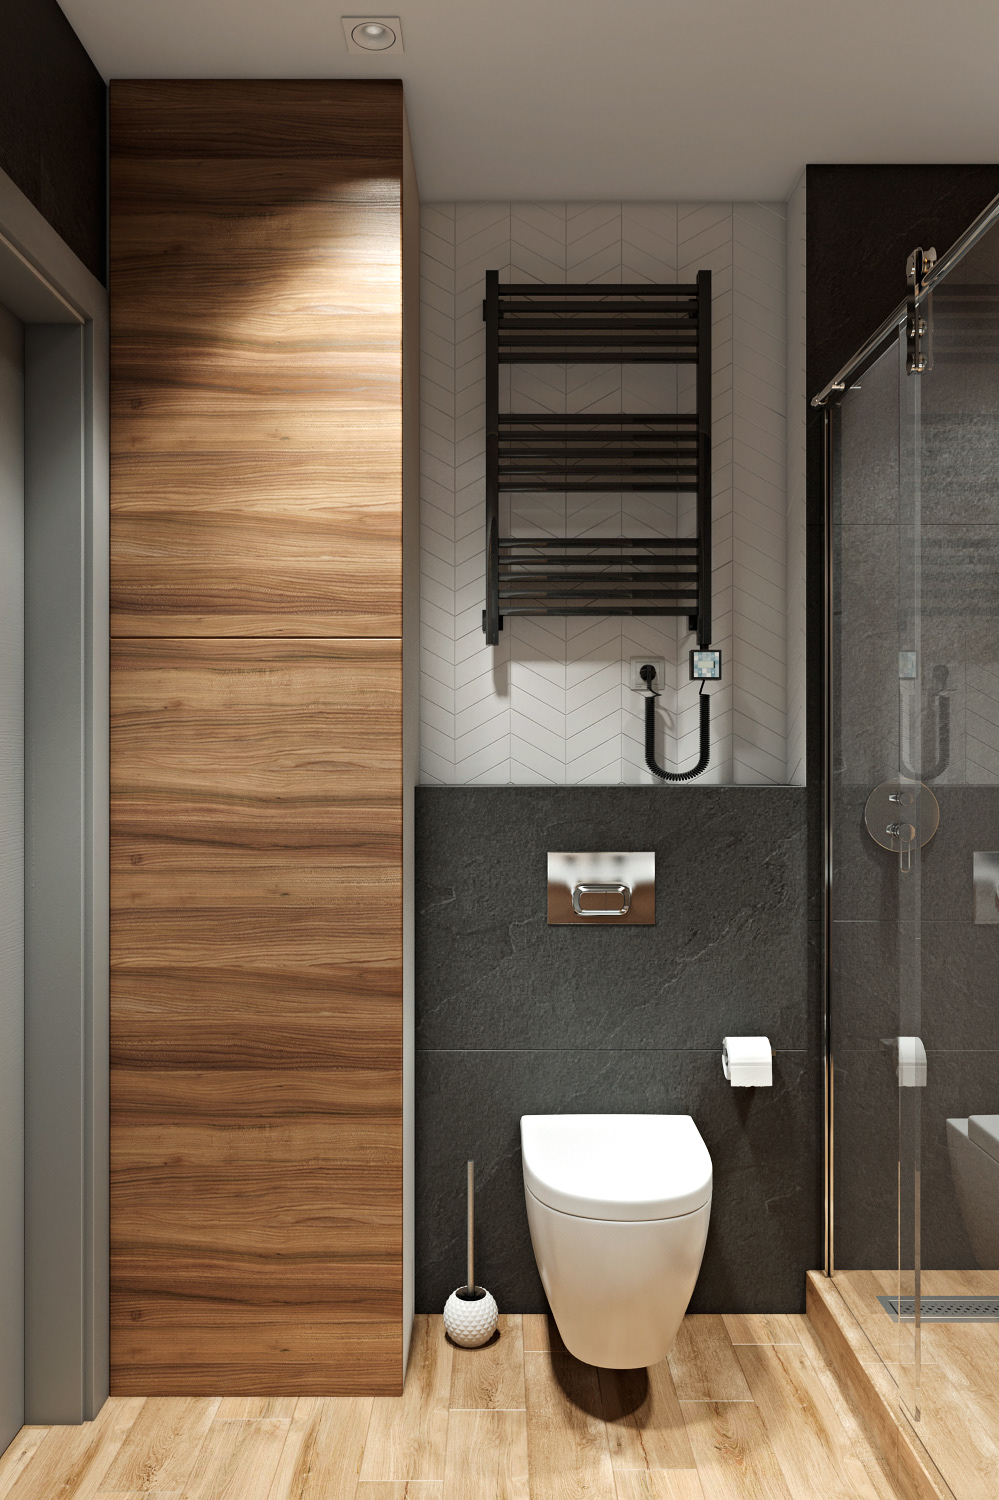 卫浴空间注重审美与氛围感的营造，木质元素牵引出温润的空间气质。